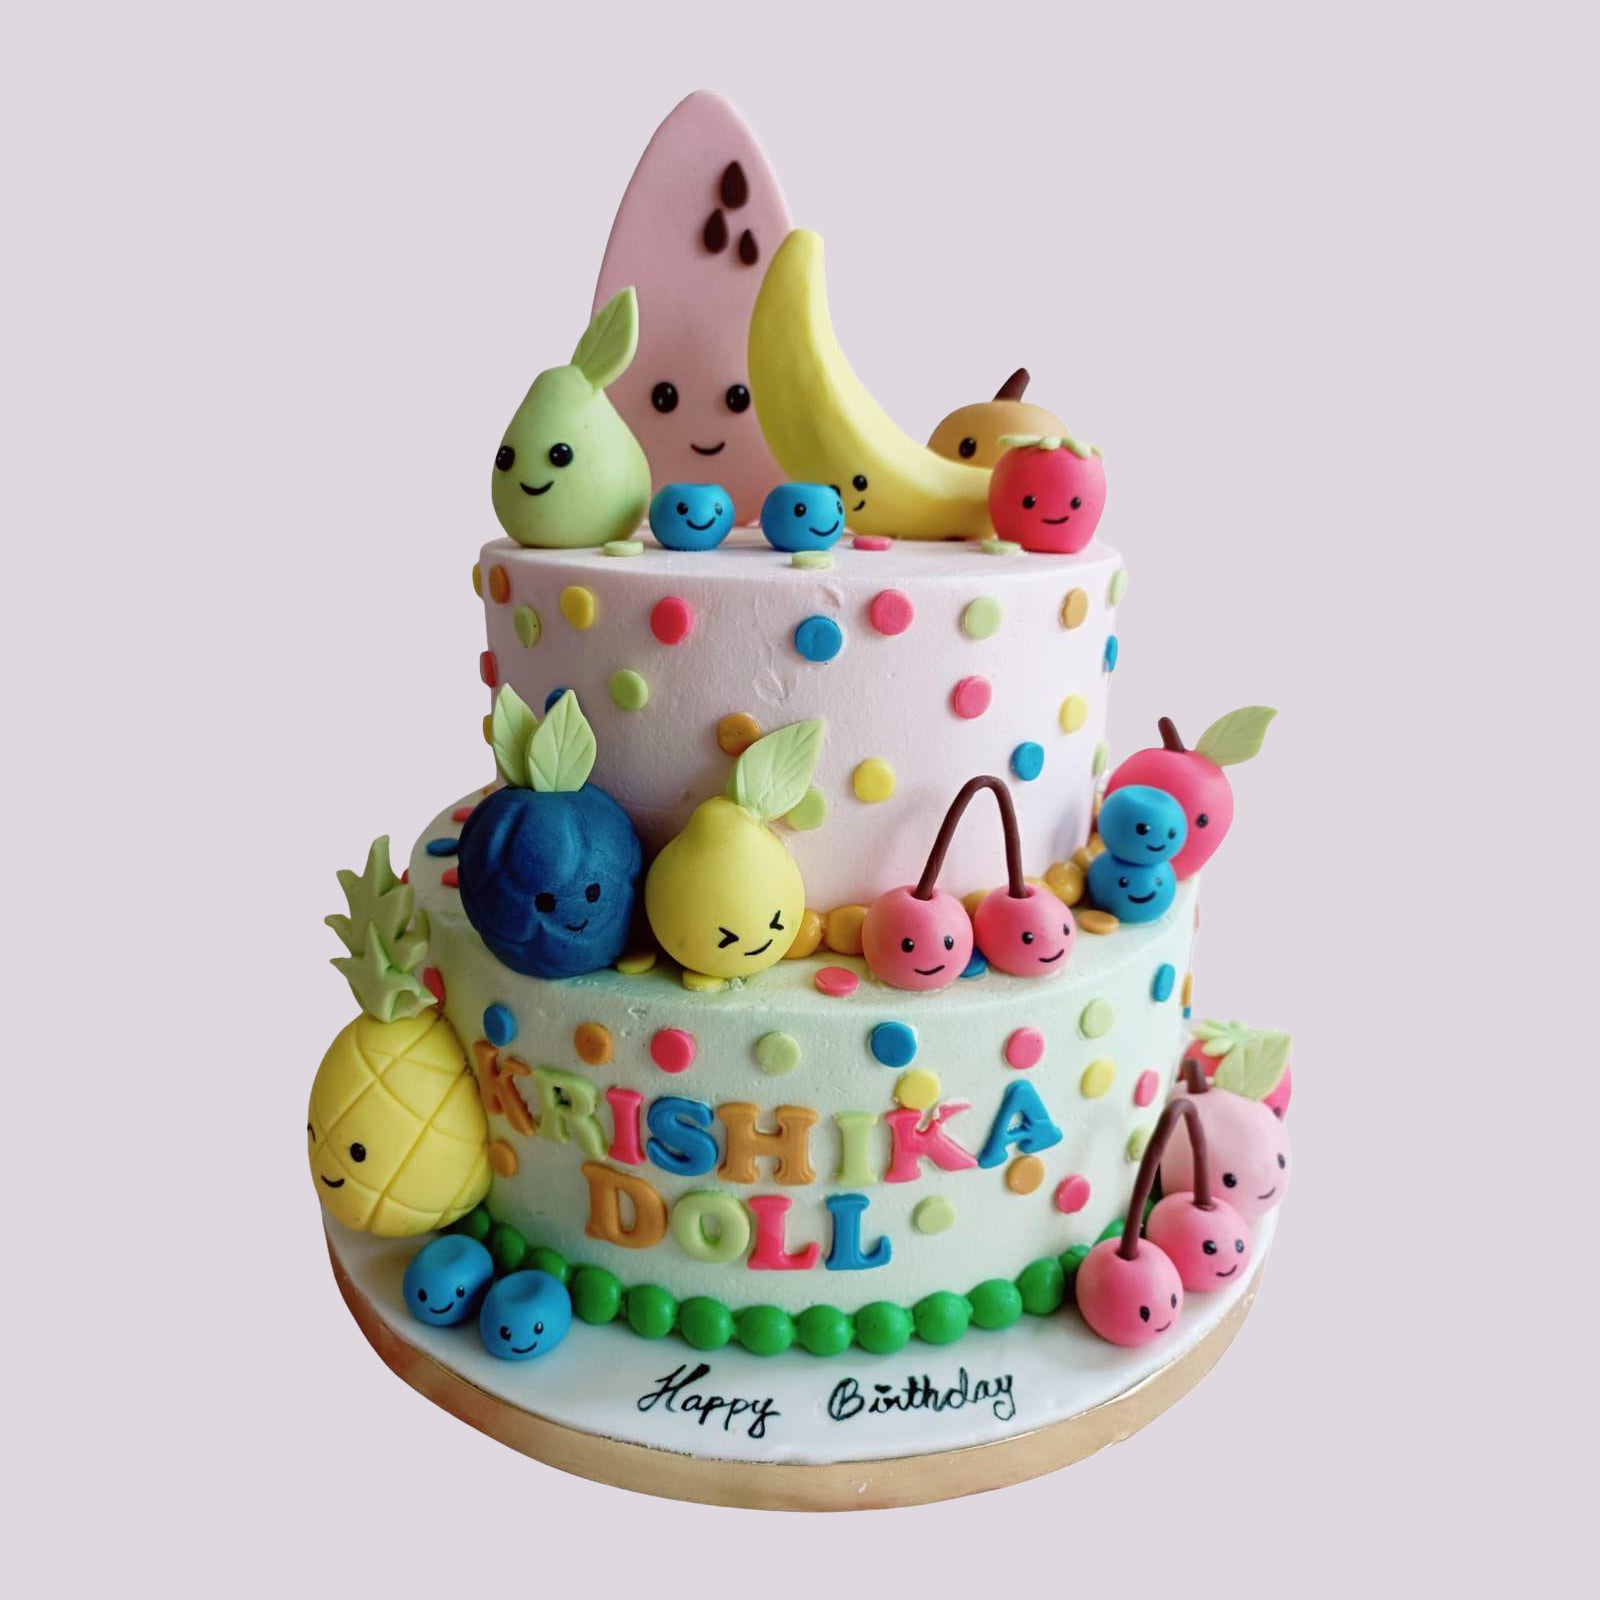 740 Me gusta, 15 comentarios - Birthday Cake | Decor Class  (@whiskandsugar.cakery) en Instagram: 